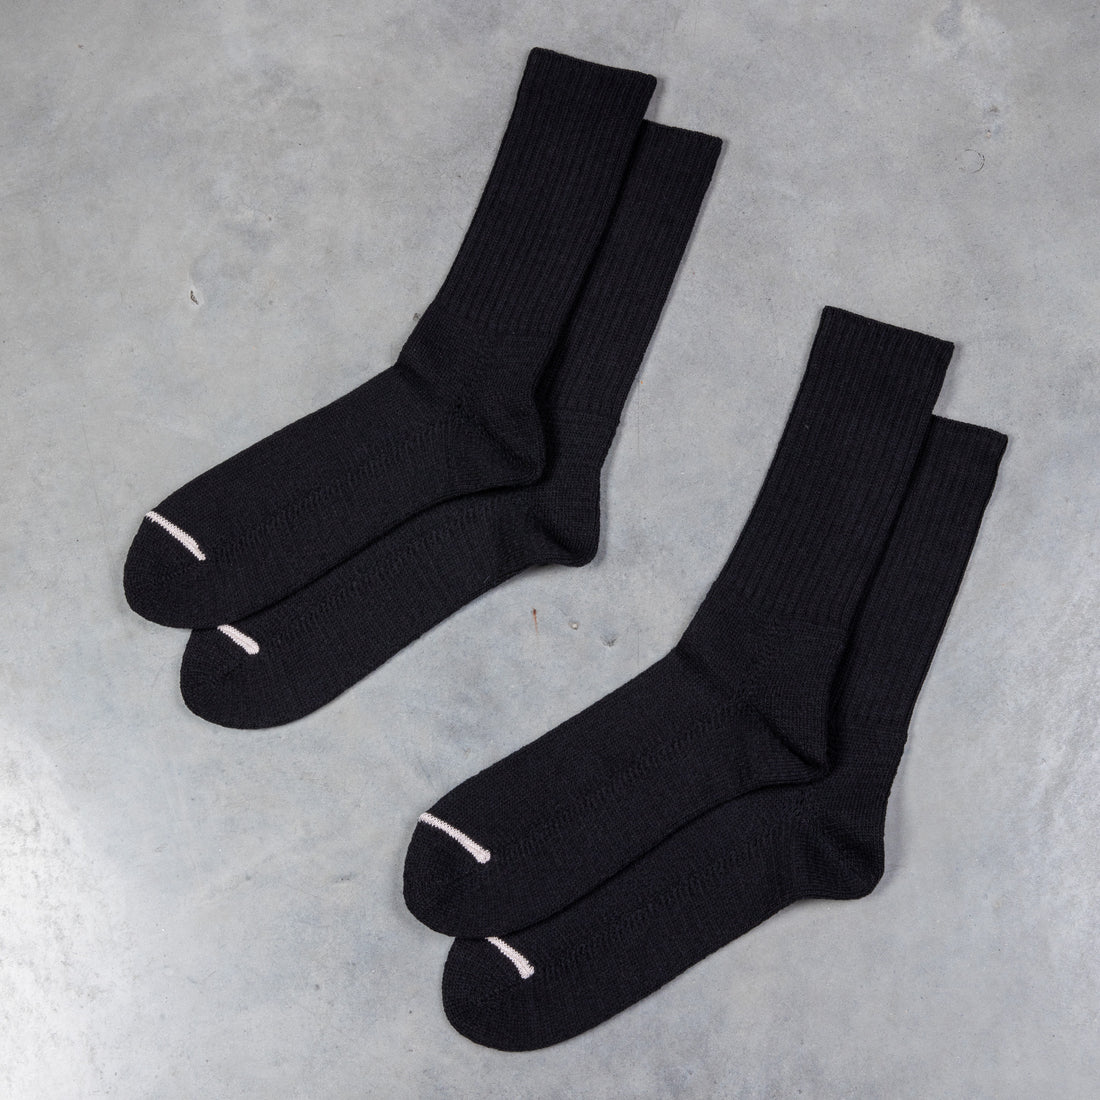 The Real McCoy's 2-Pack Socks Black